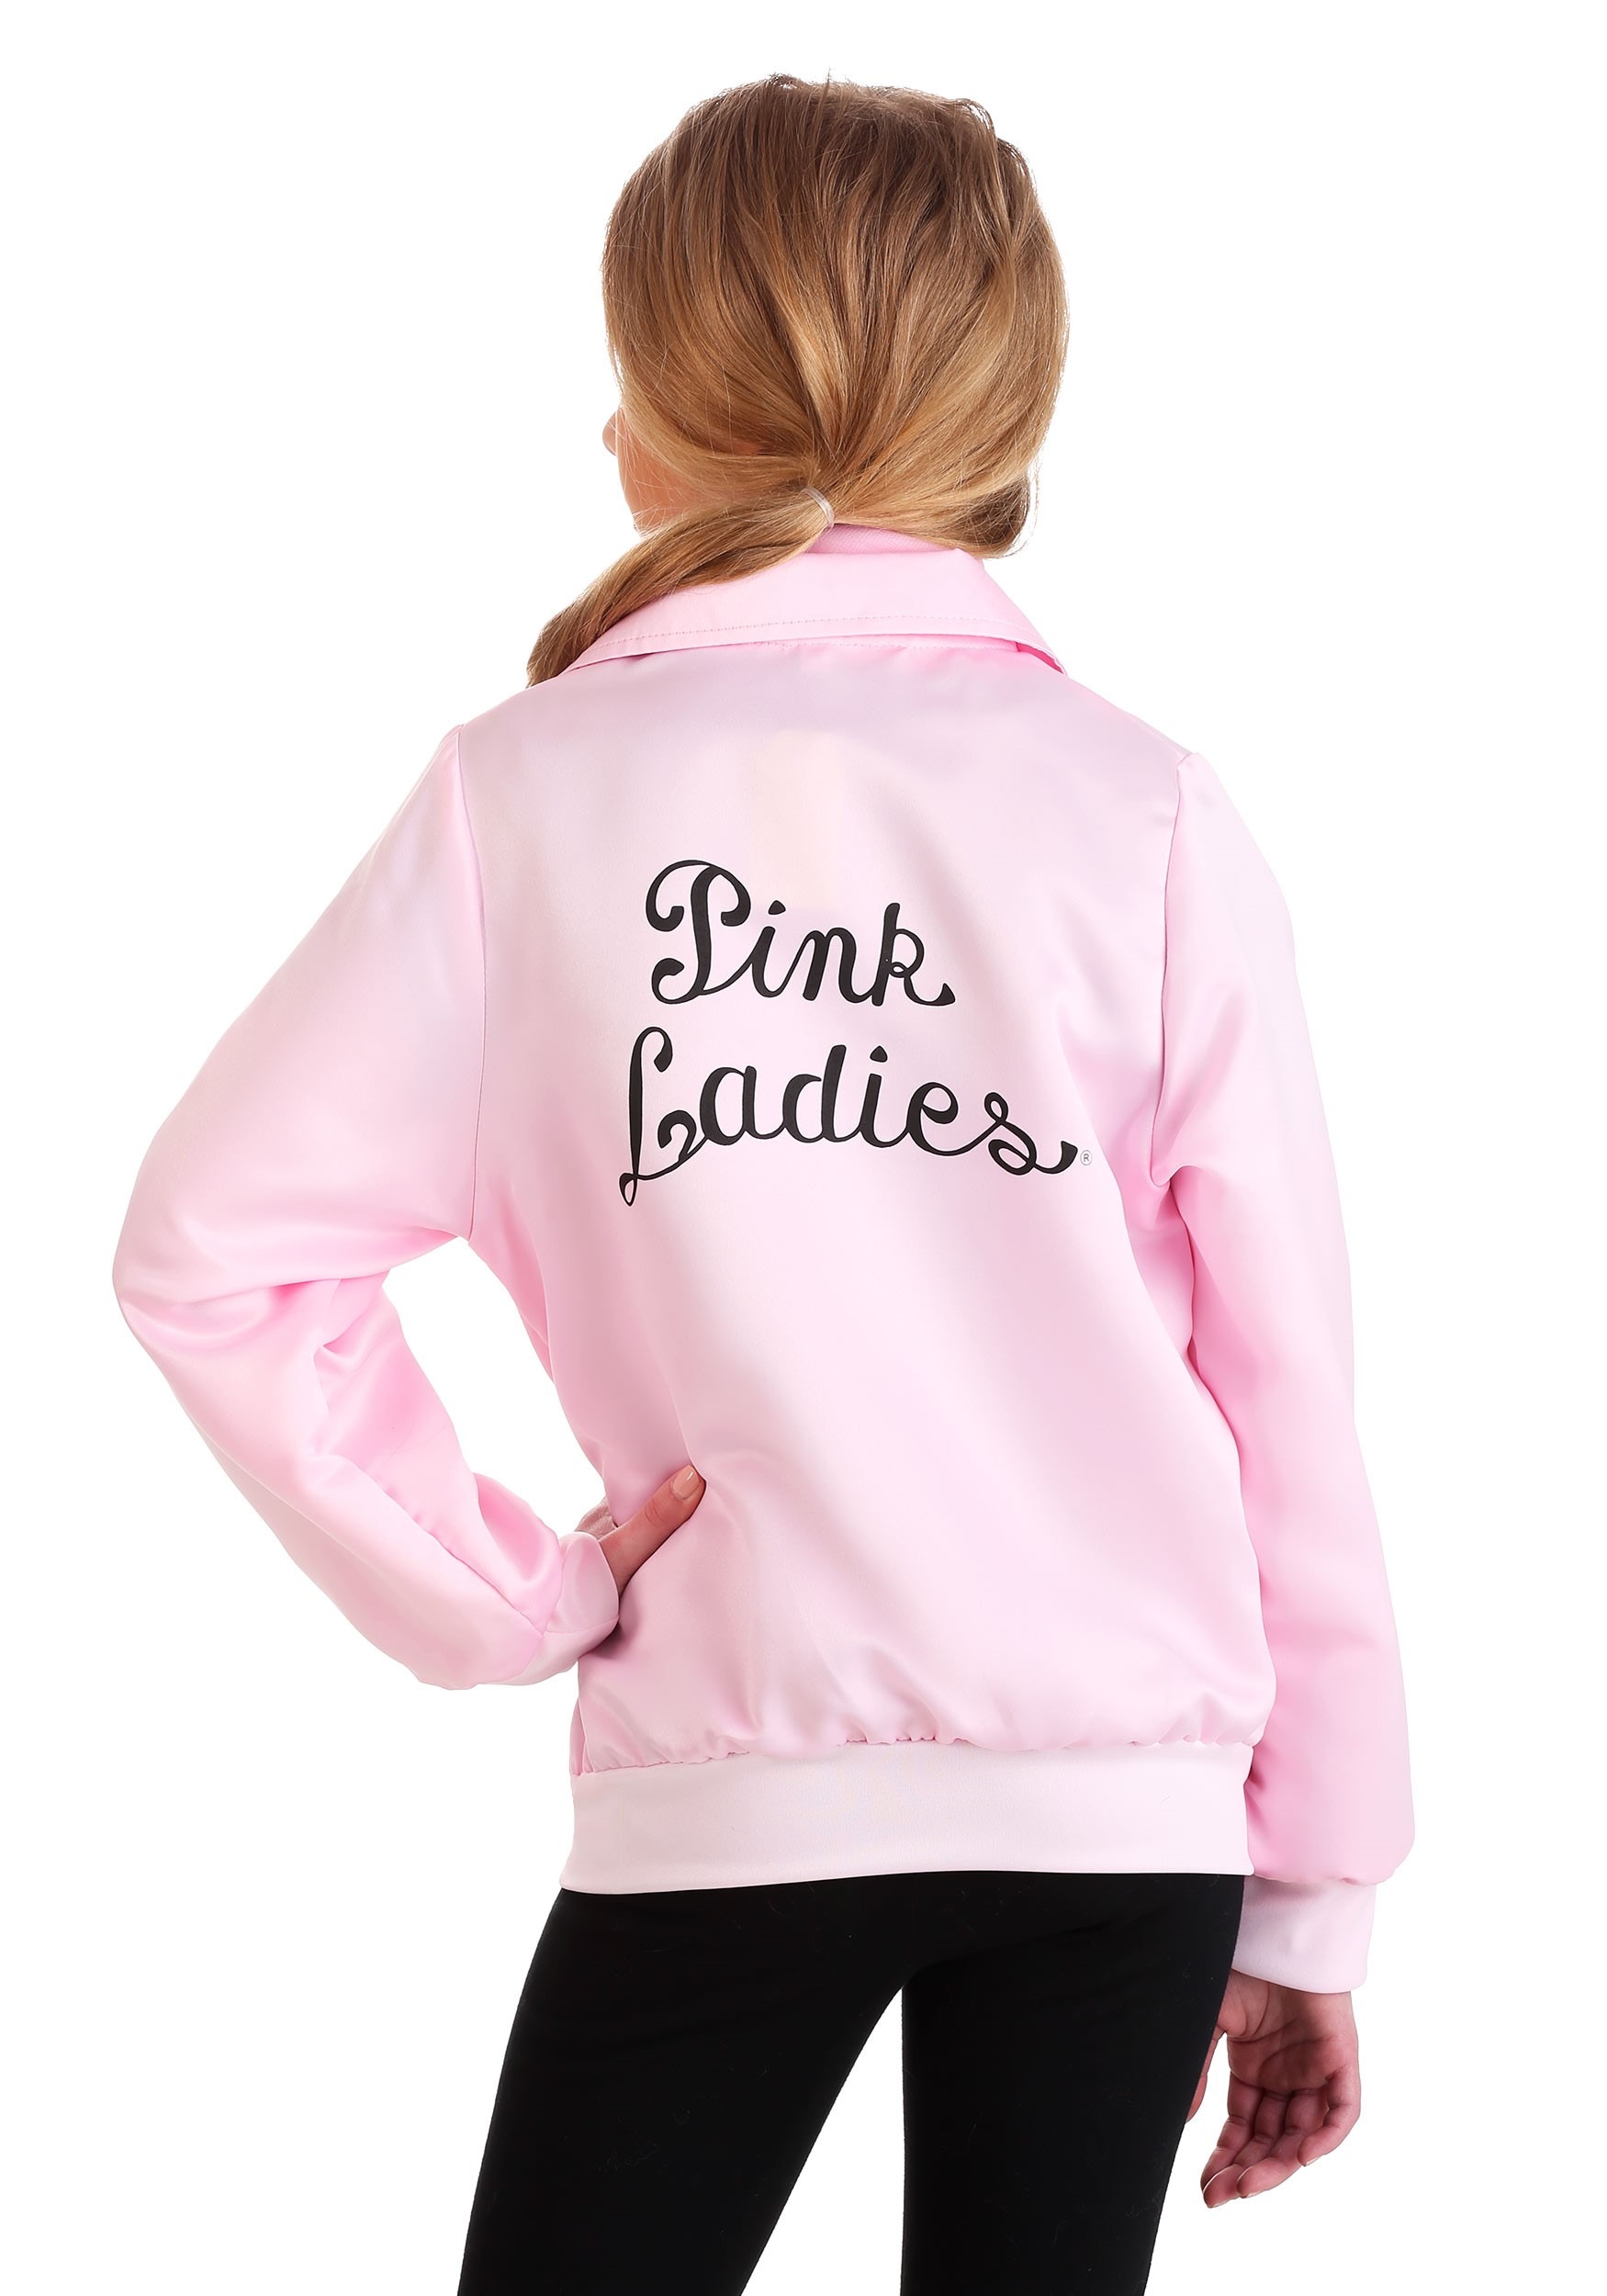 Grease Pink Ladies Long Sleeve Adult Black Hooded Sweatshirt-xxl